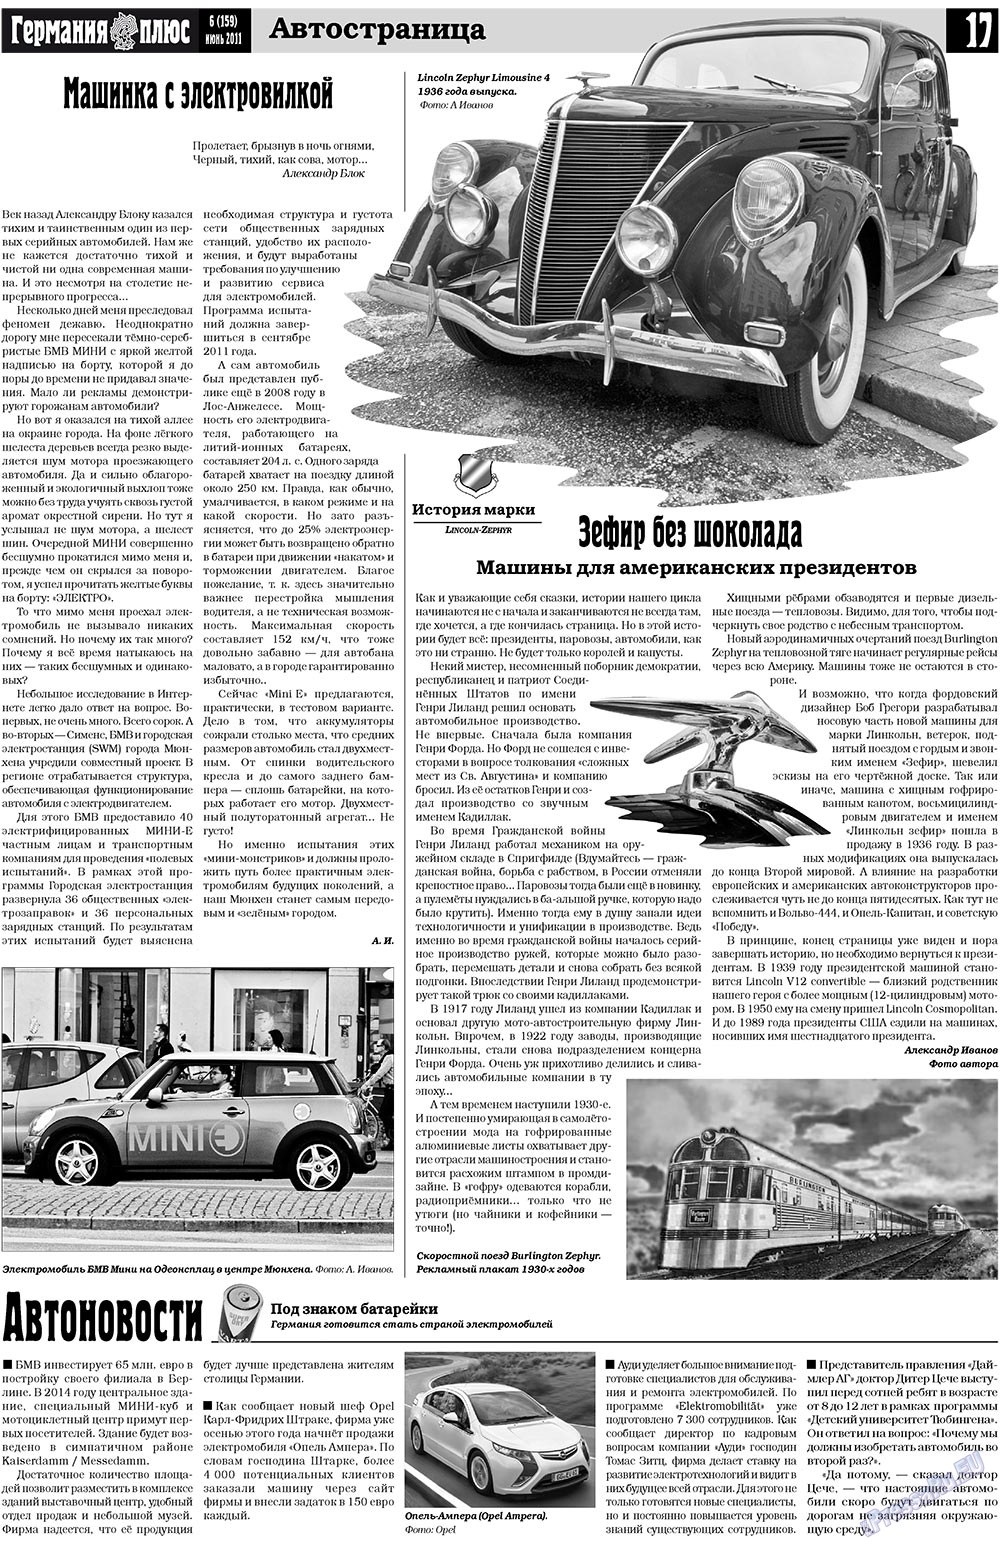 Германия плюс, газета. 2011 №6 стр.17